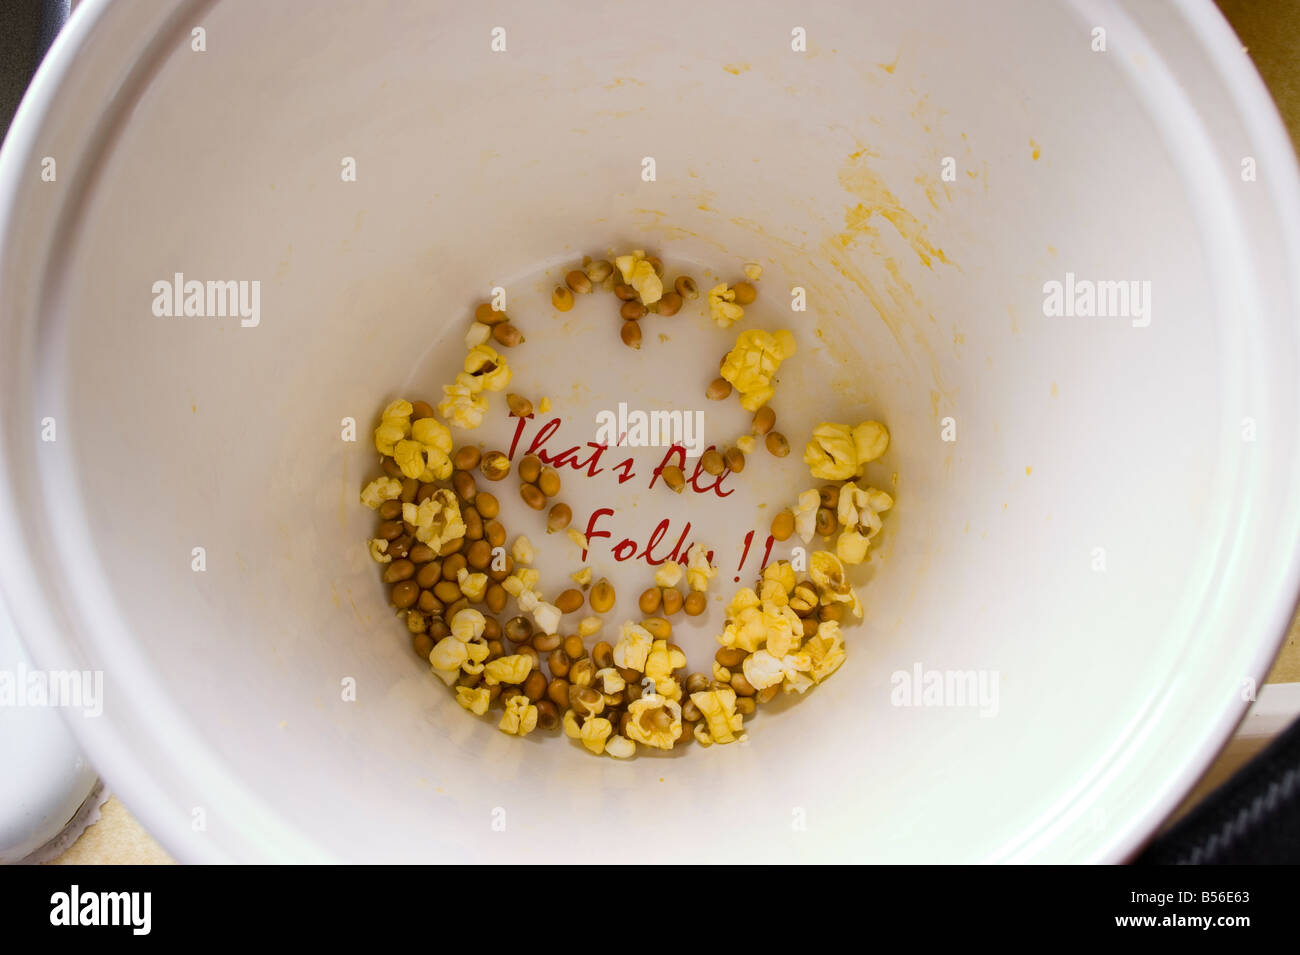 Le fond d'un plat de popcorn a les mots "c'est tous les gens" Banque D'Images